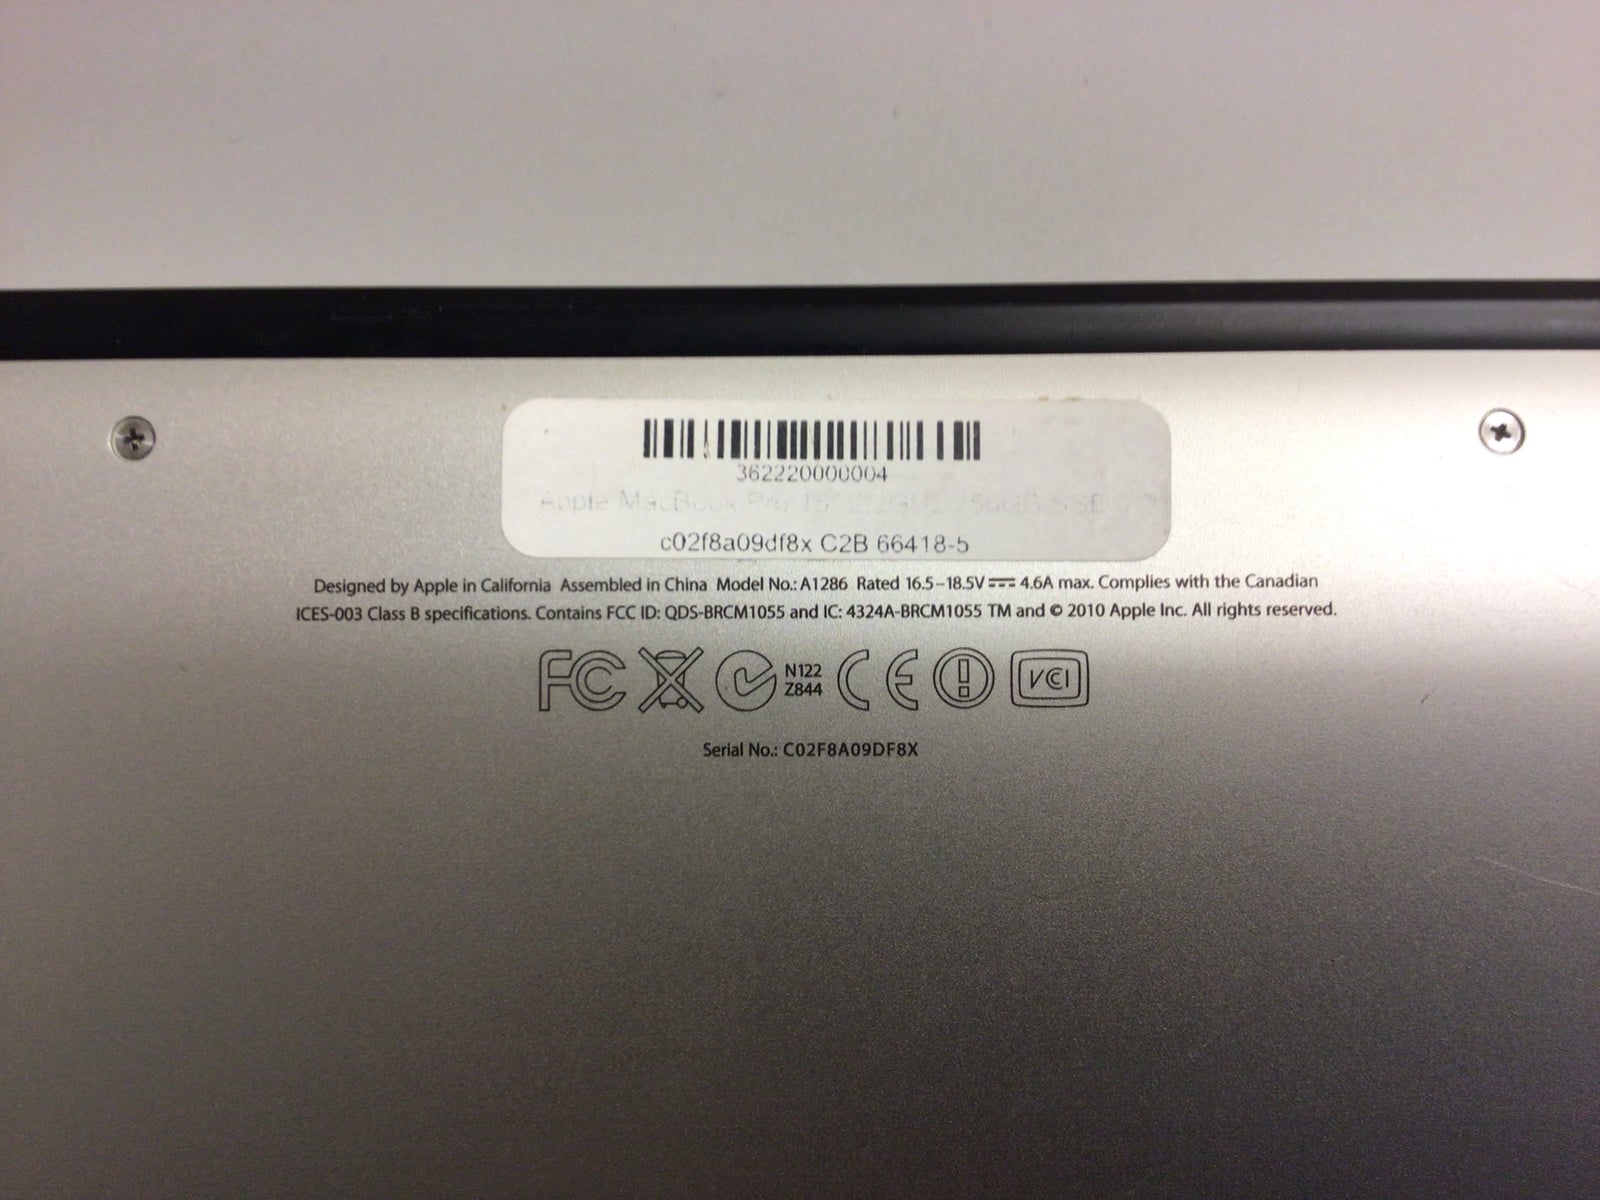 Andet mærke Mac Book Pro 15”, 2,2 GHz, 4 GB ram